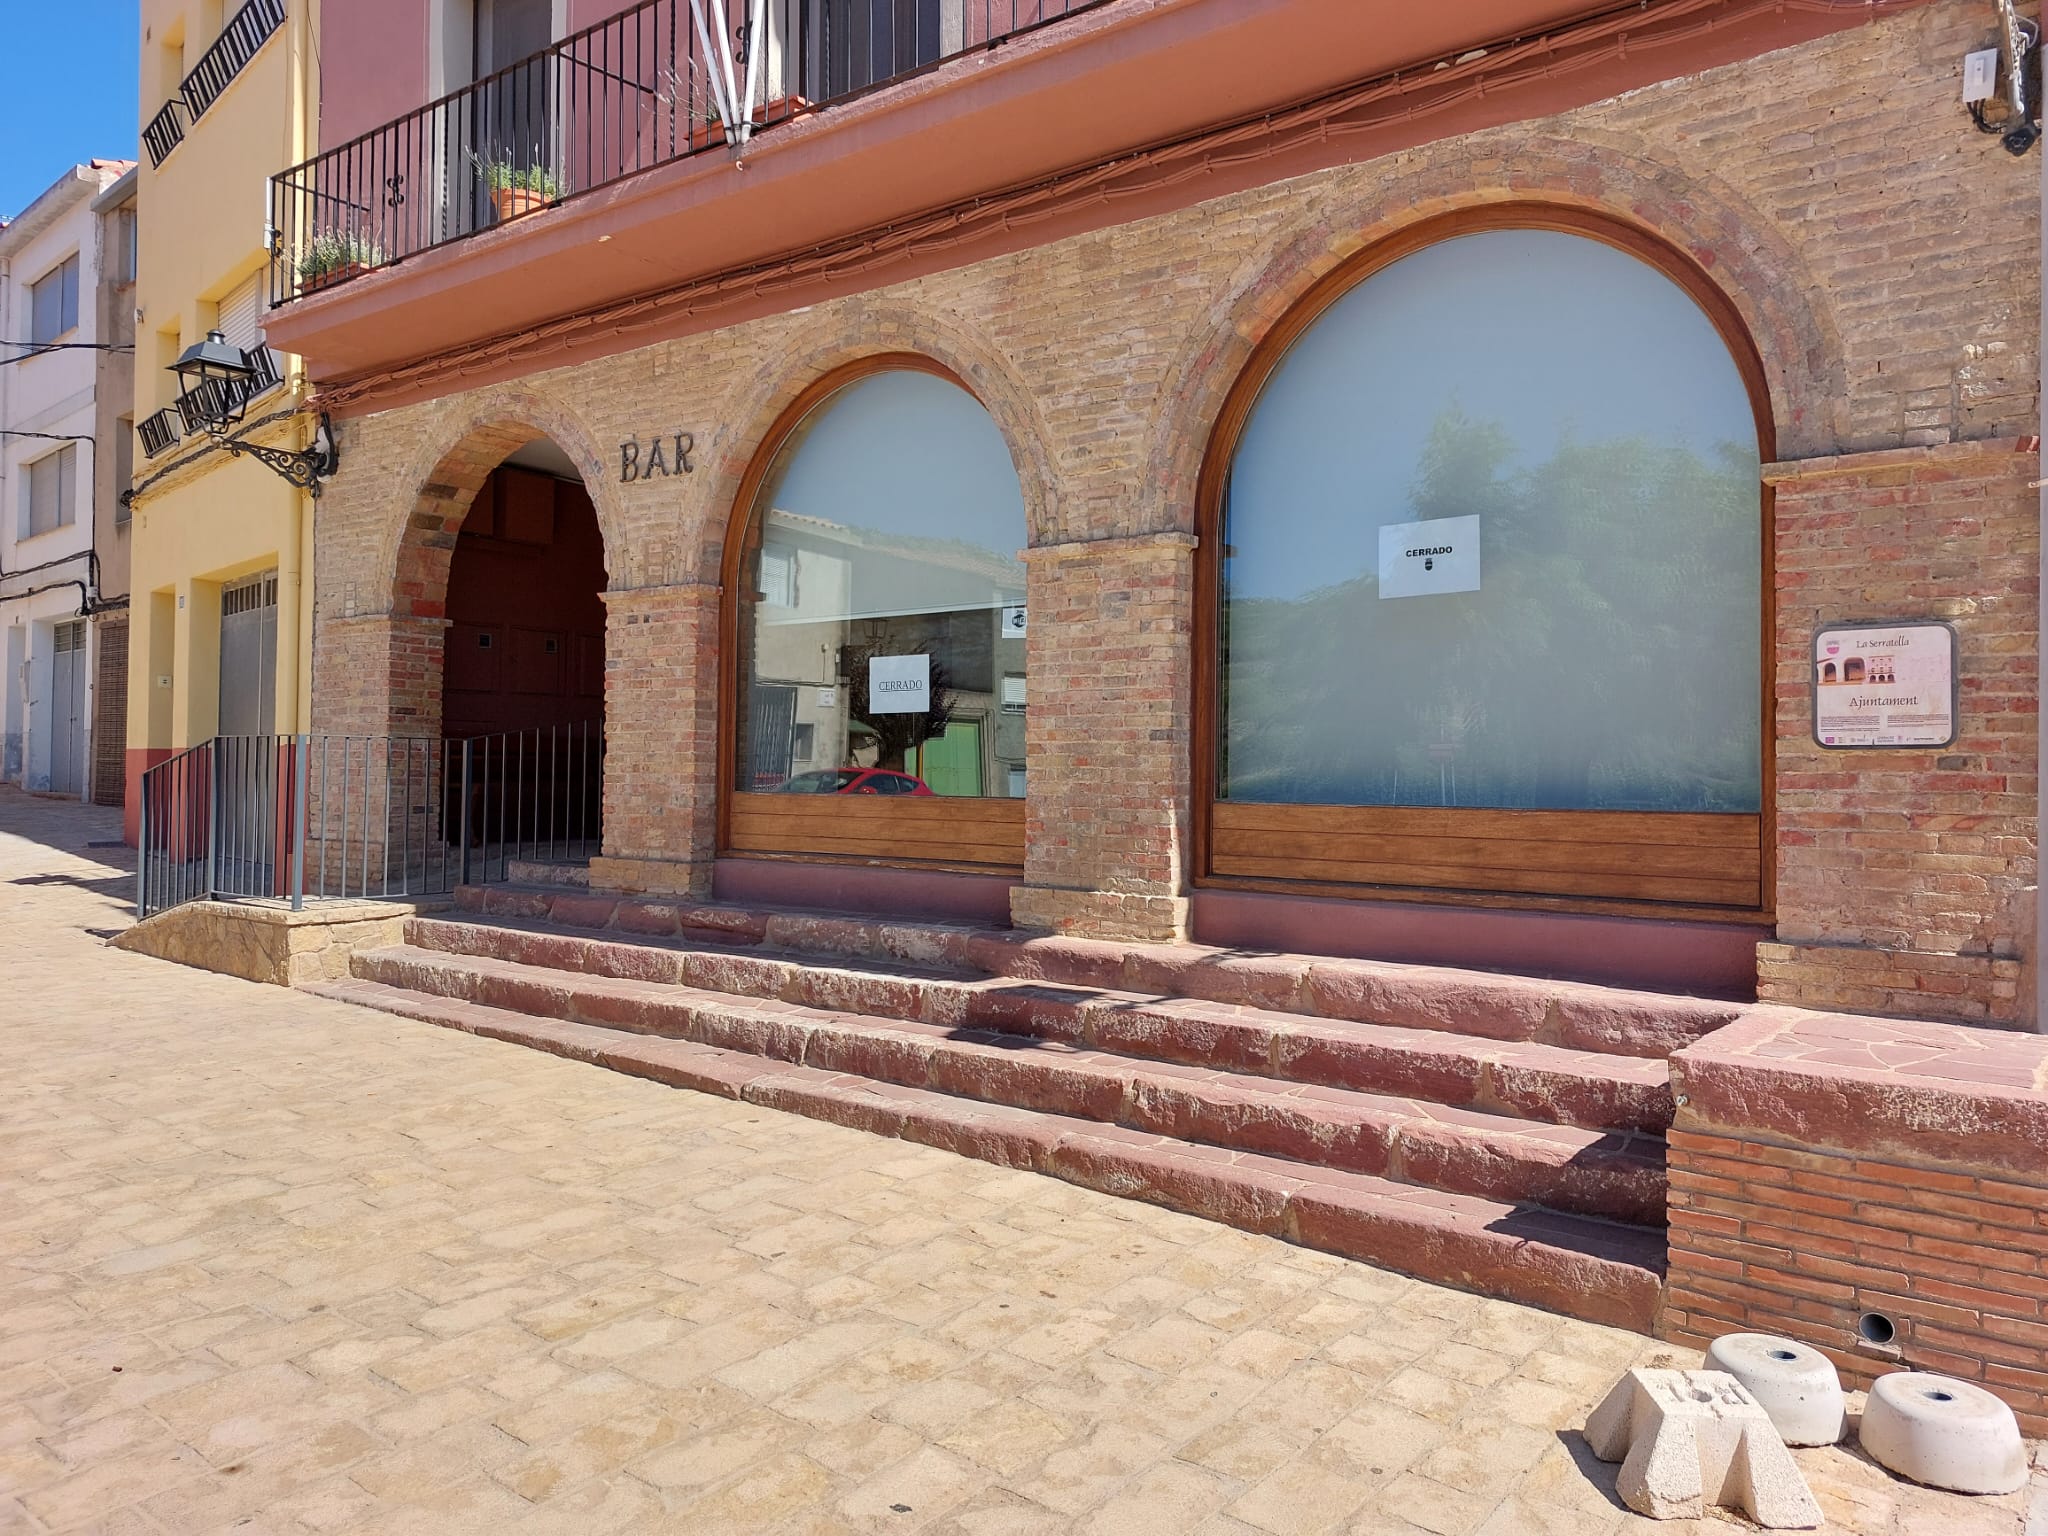 El ayuntamiento de La Serratella, en Valencia, ofrece alquilar un bar por 50 euros al mes.